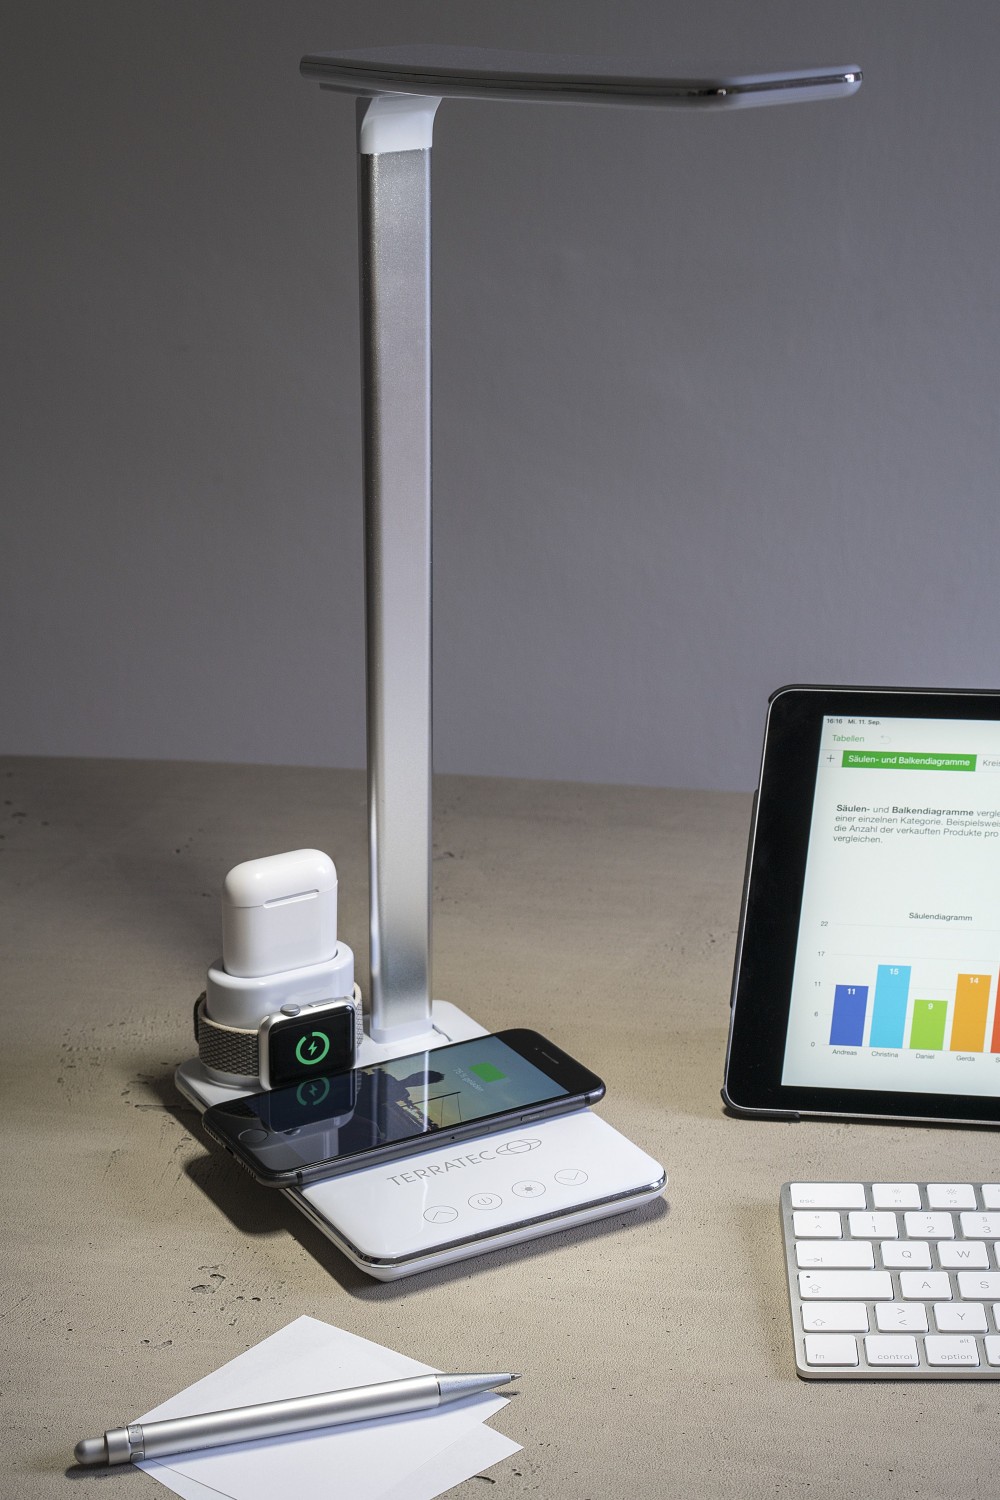 Produktvorstellung Tischlampe von Terratec mit induktivem Ladepad für Smartphone, AirPods und Apple Watch - News, Bild 1